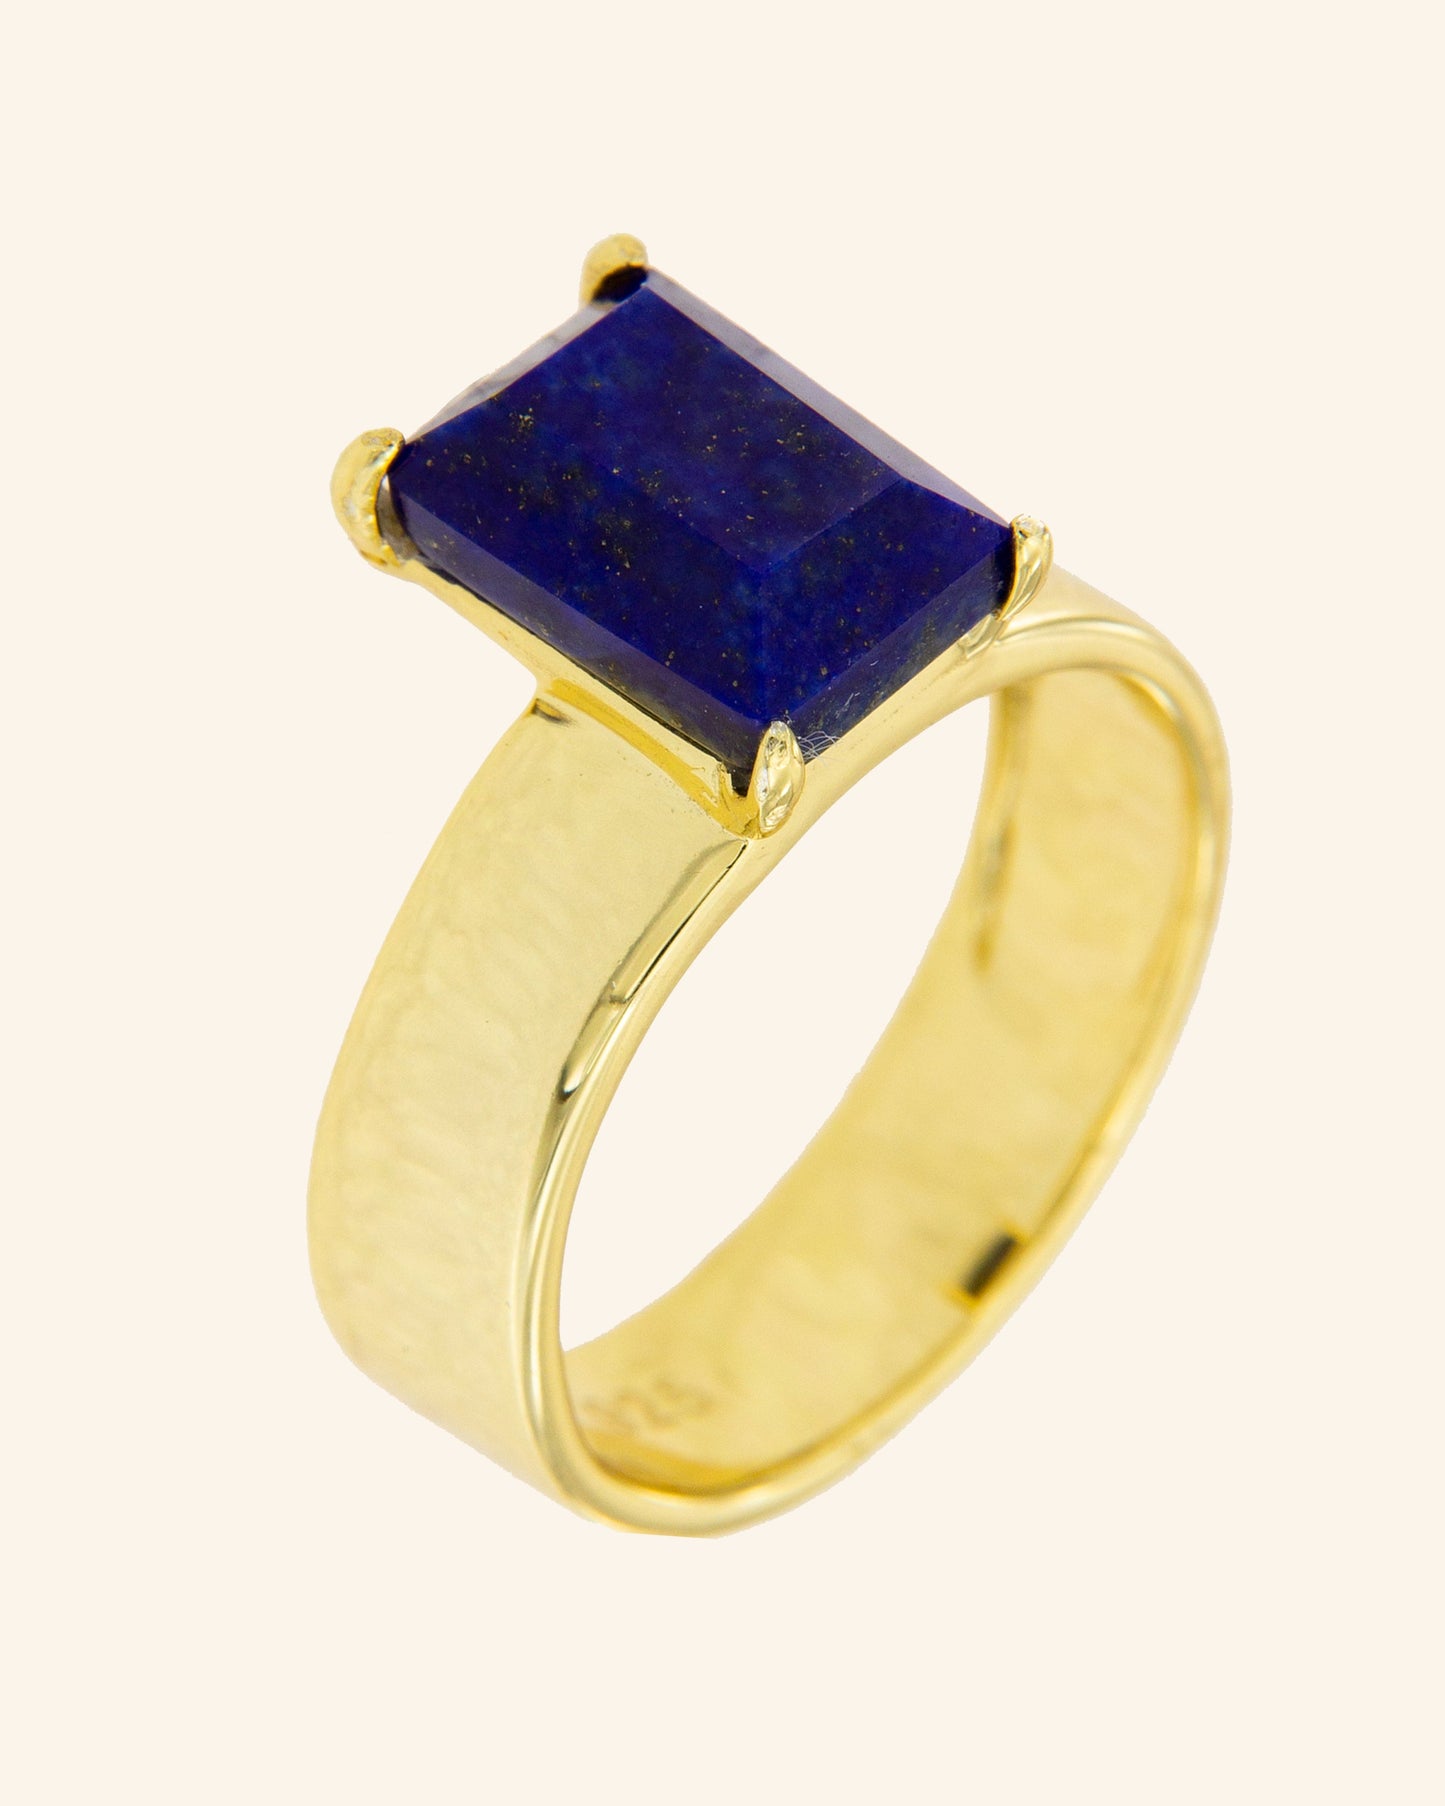 Gabo Ring with Lapis Lazuli